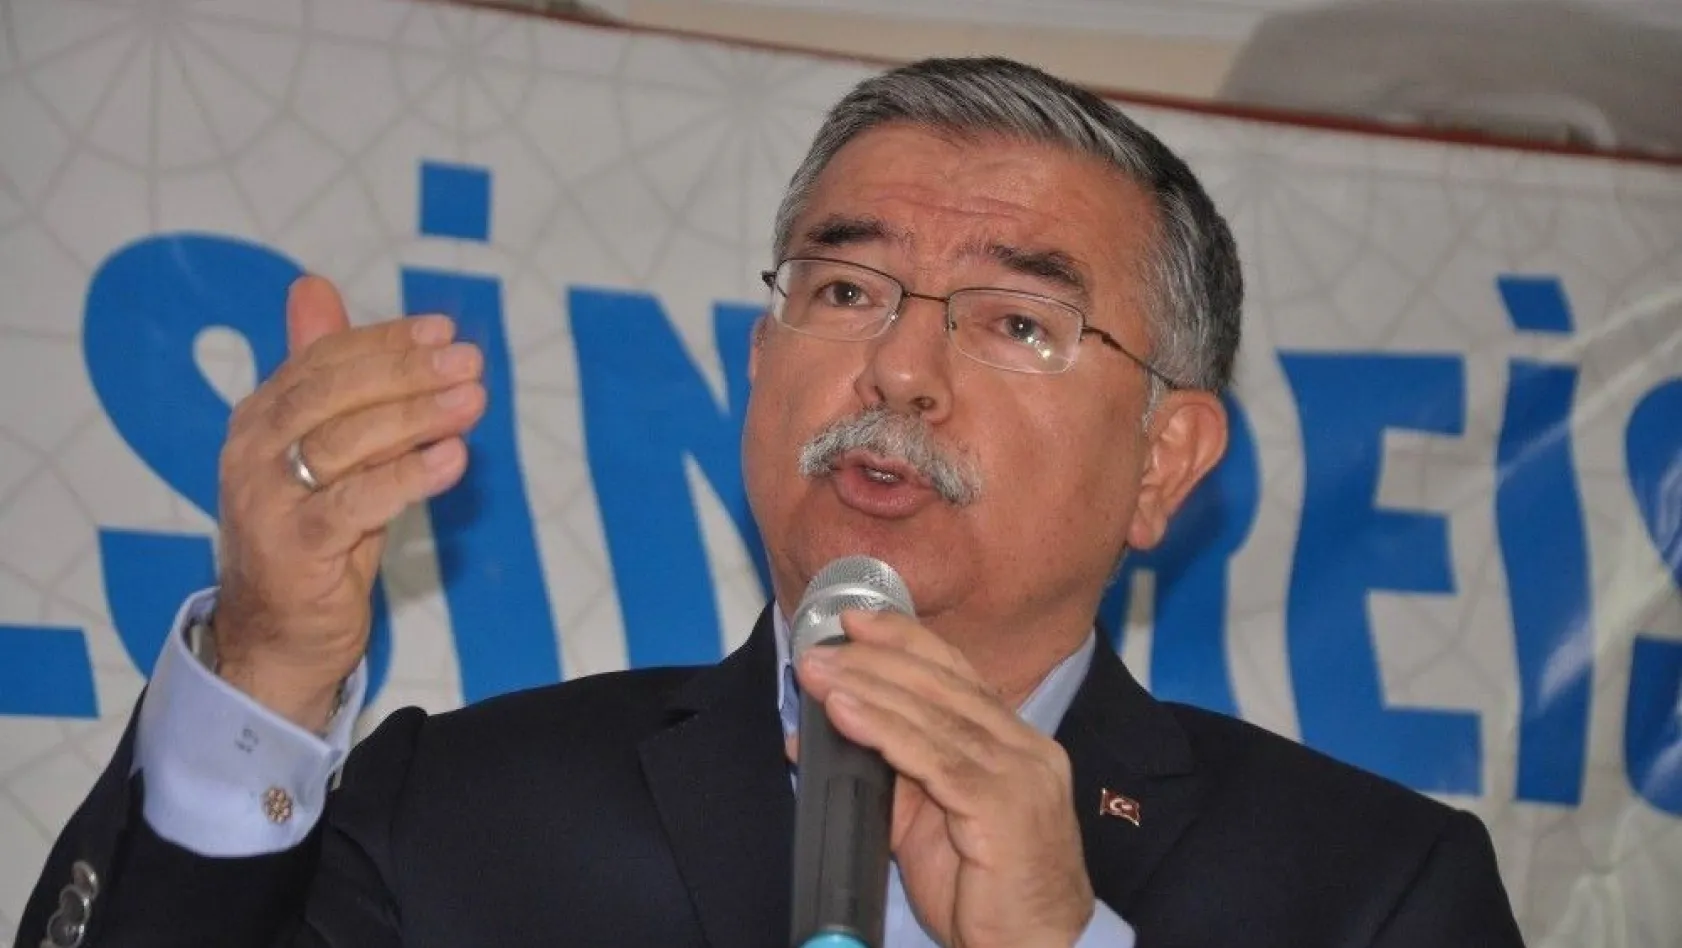 Milli Eğitim Bakanı Yılmaz: 'CHP'nin vesayet odaklarıyla dirsek teması çok iyi'
